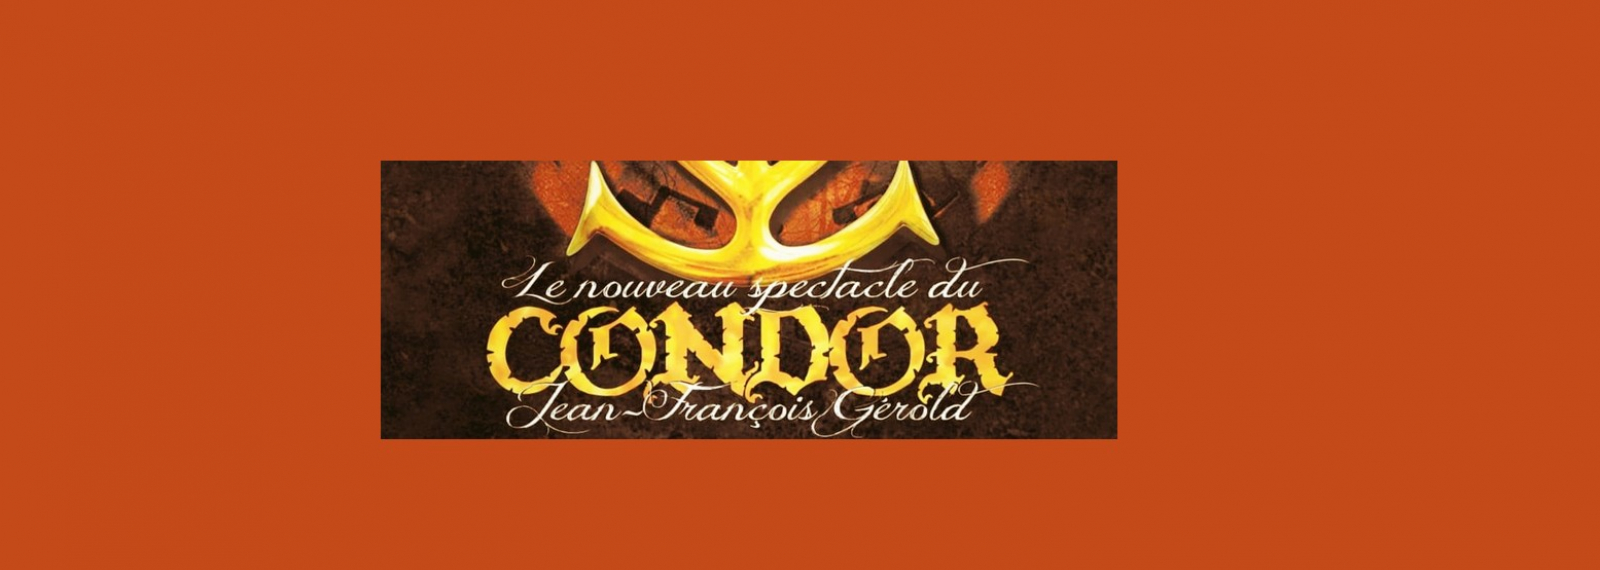 Konzert Le Condor